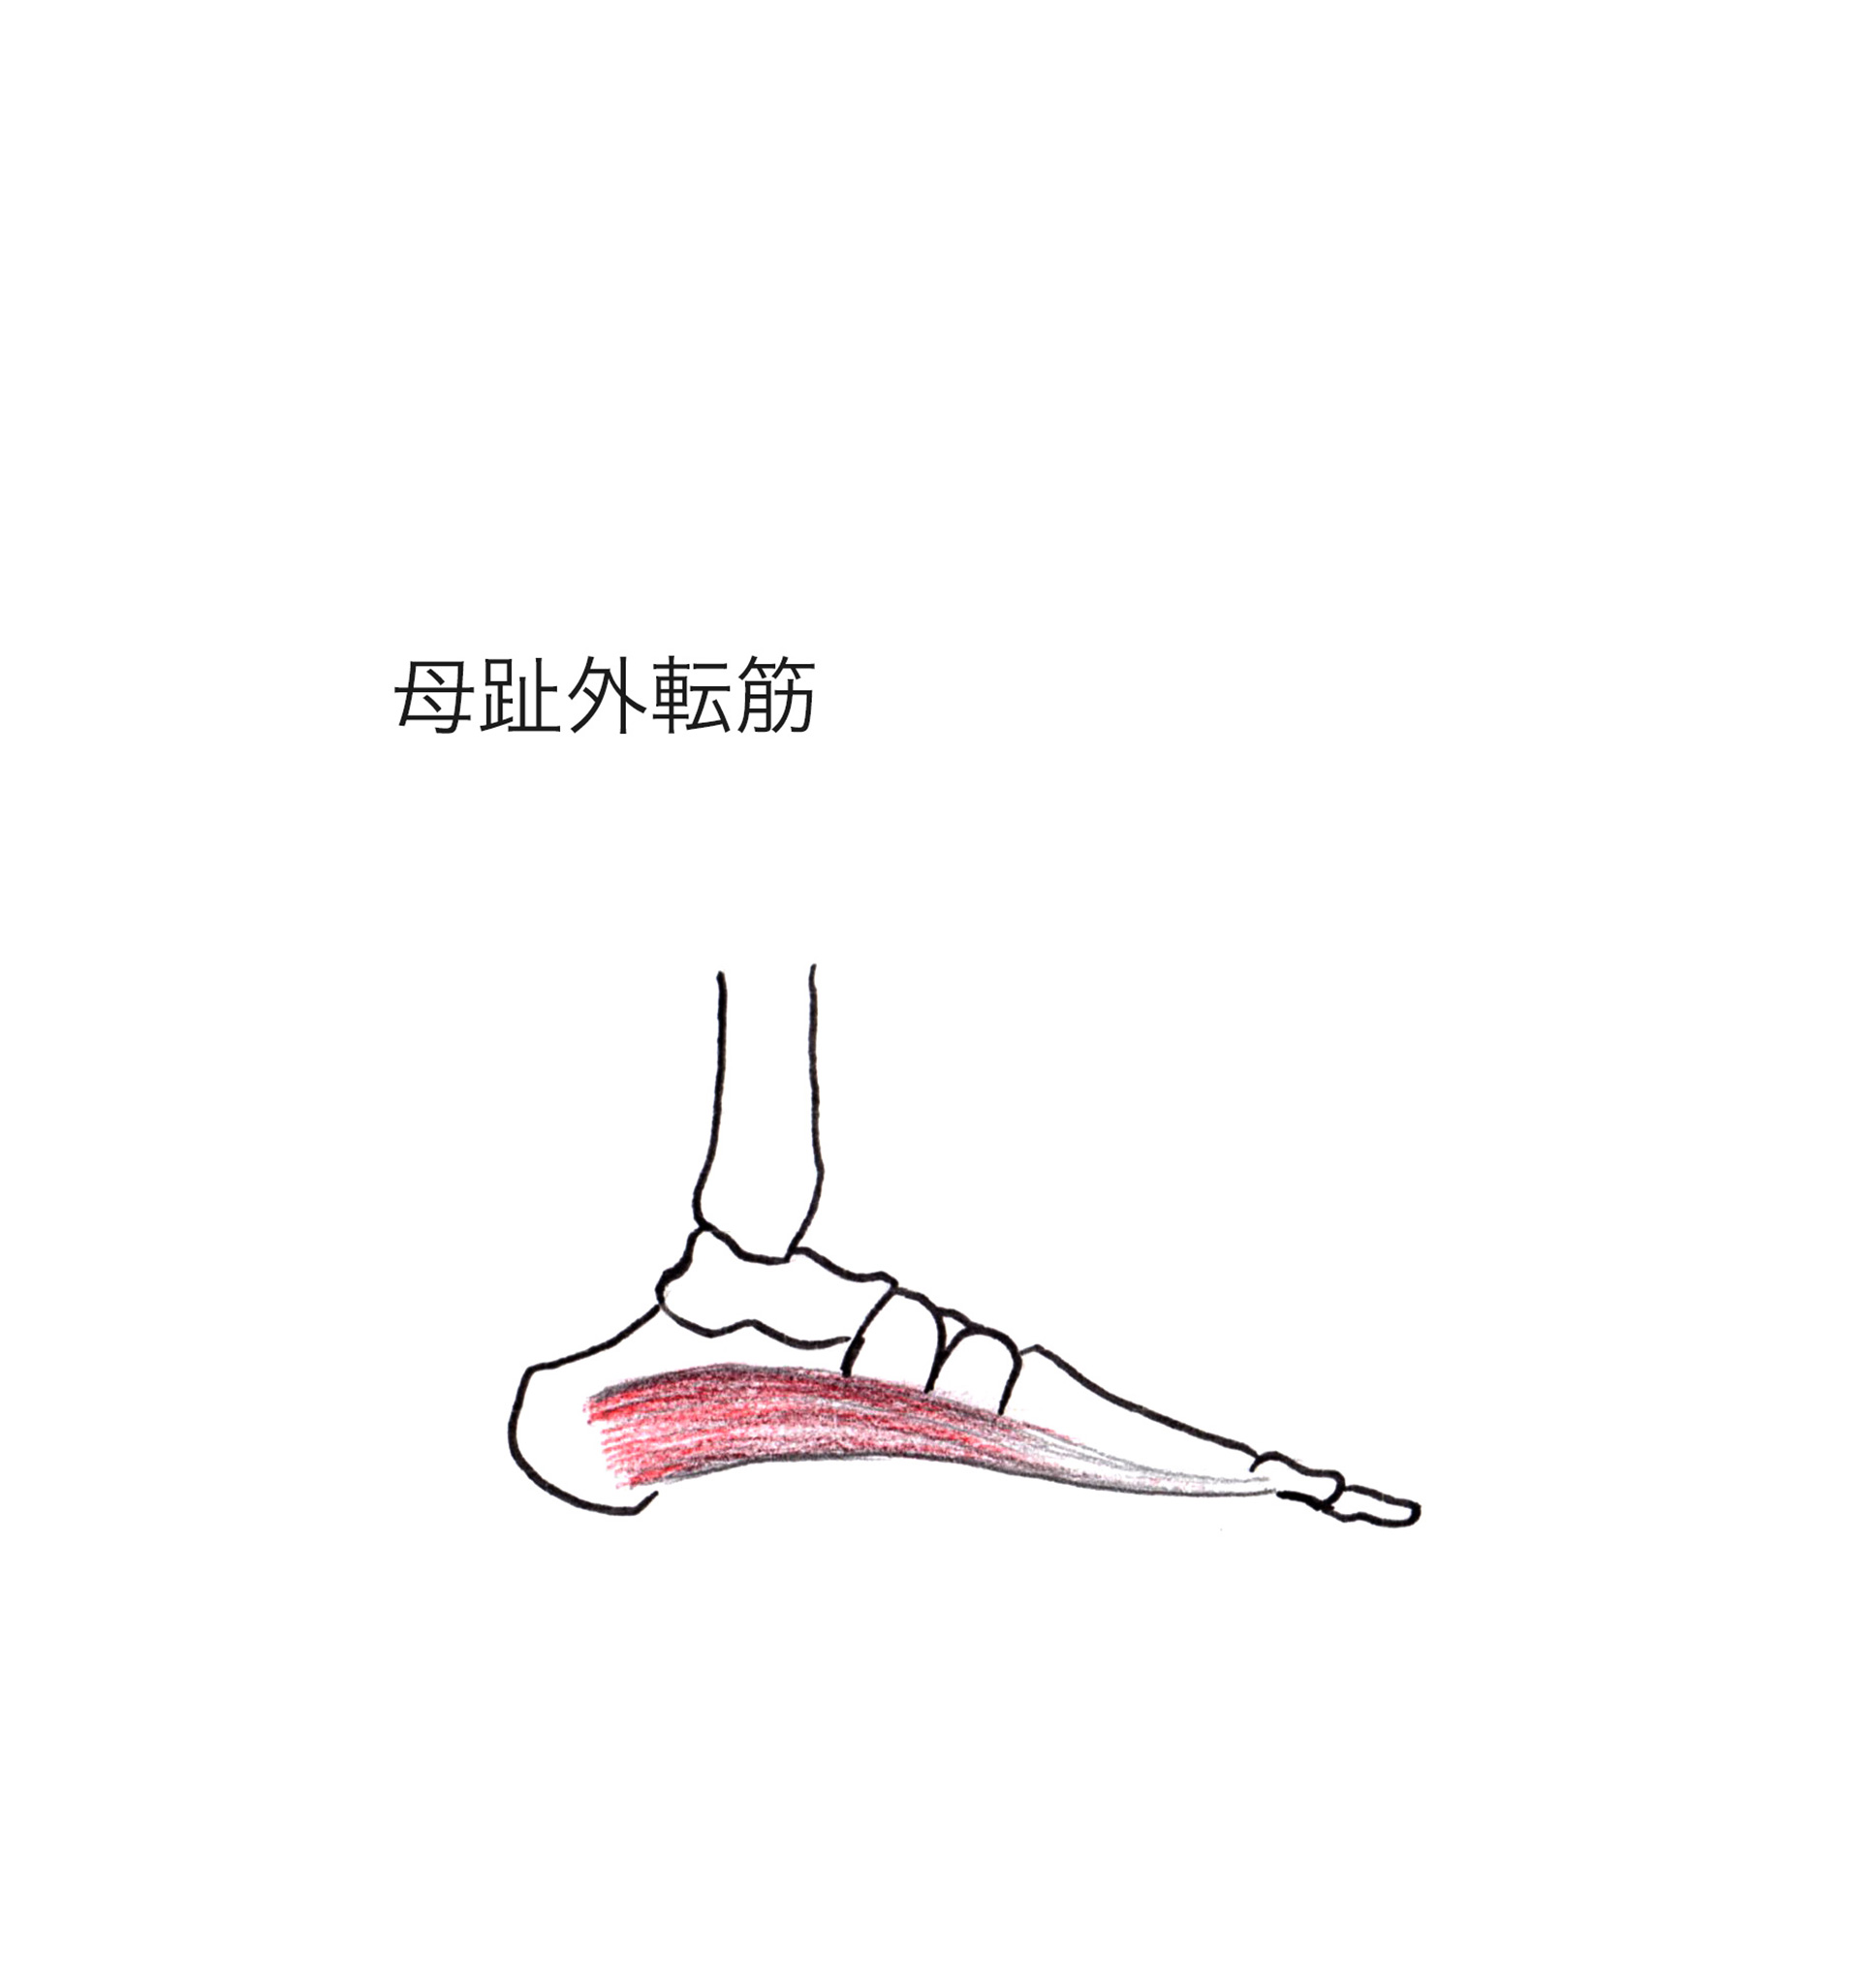 【土踏まずのアーチを保ち、走る推進力を向上させる筋肉】母趾外転筋の特徴と作用